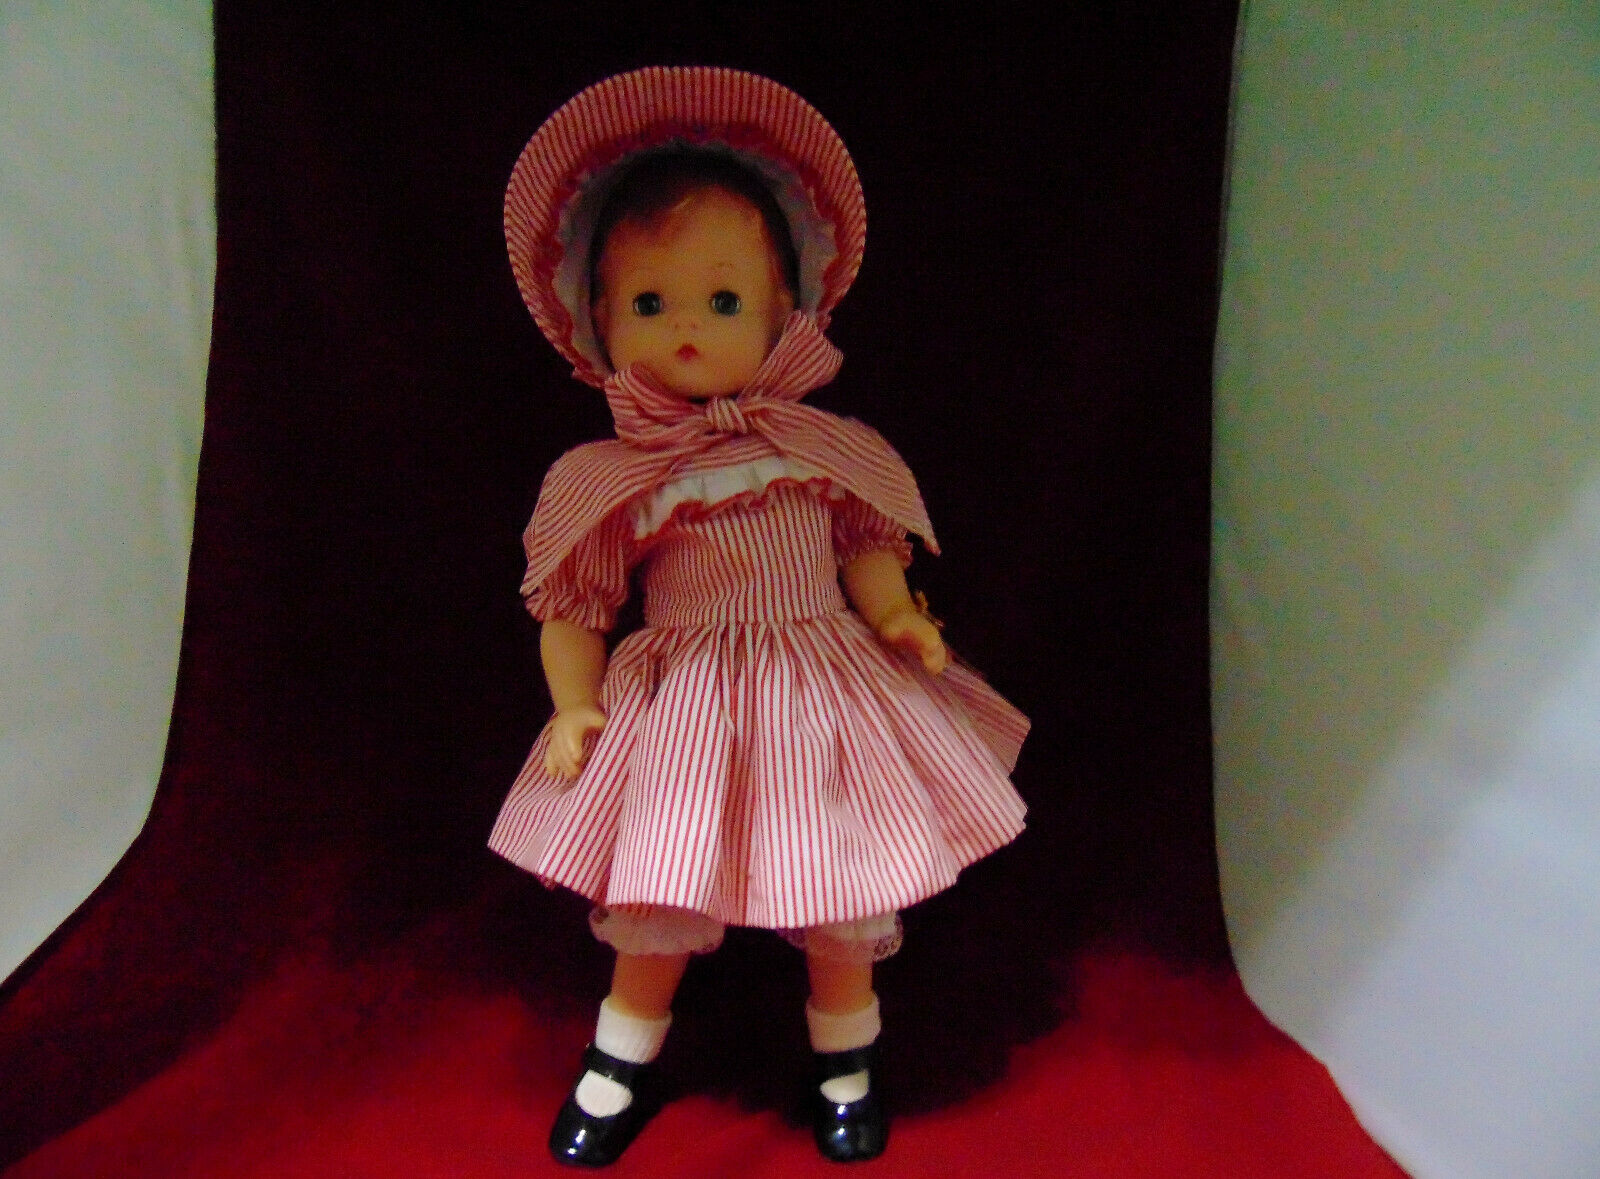 16" Certified Replica Of 1946 Patsy Joan Doll By Effanbee~~ao~~bin For $20.00